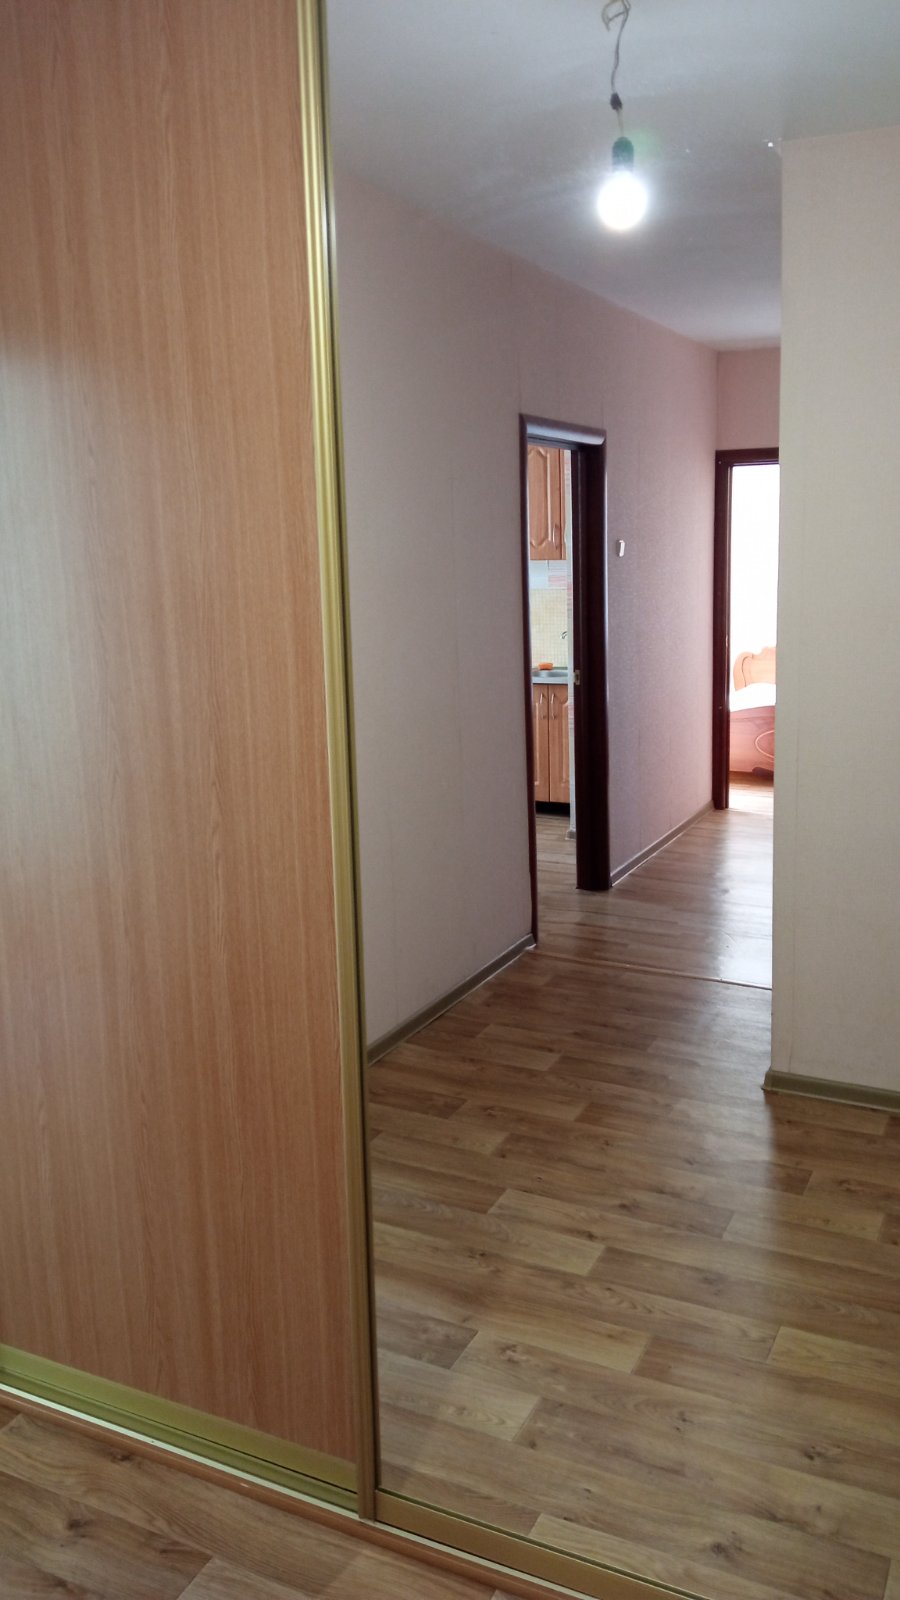 Cдам 2-х комнатную квартиру в Боровлянах на длительный срок. - фотография